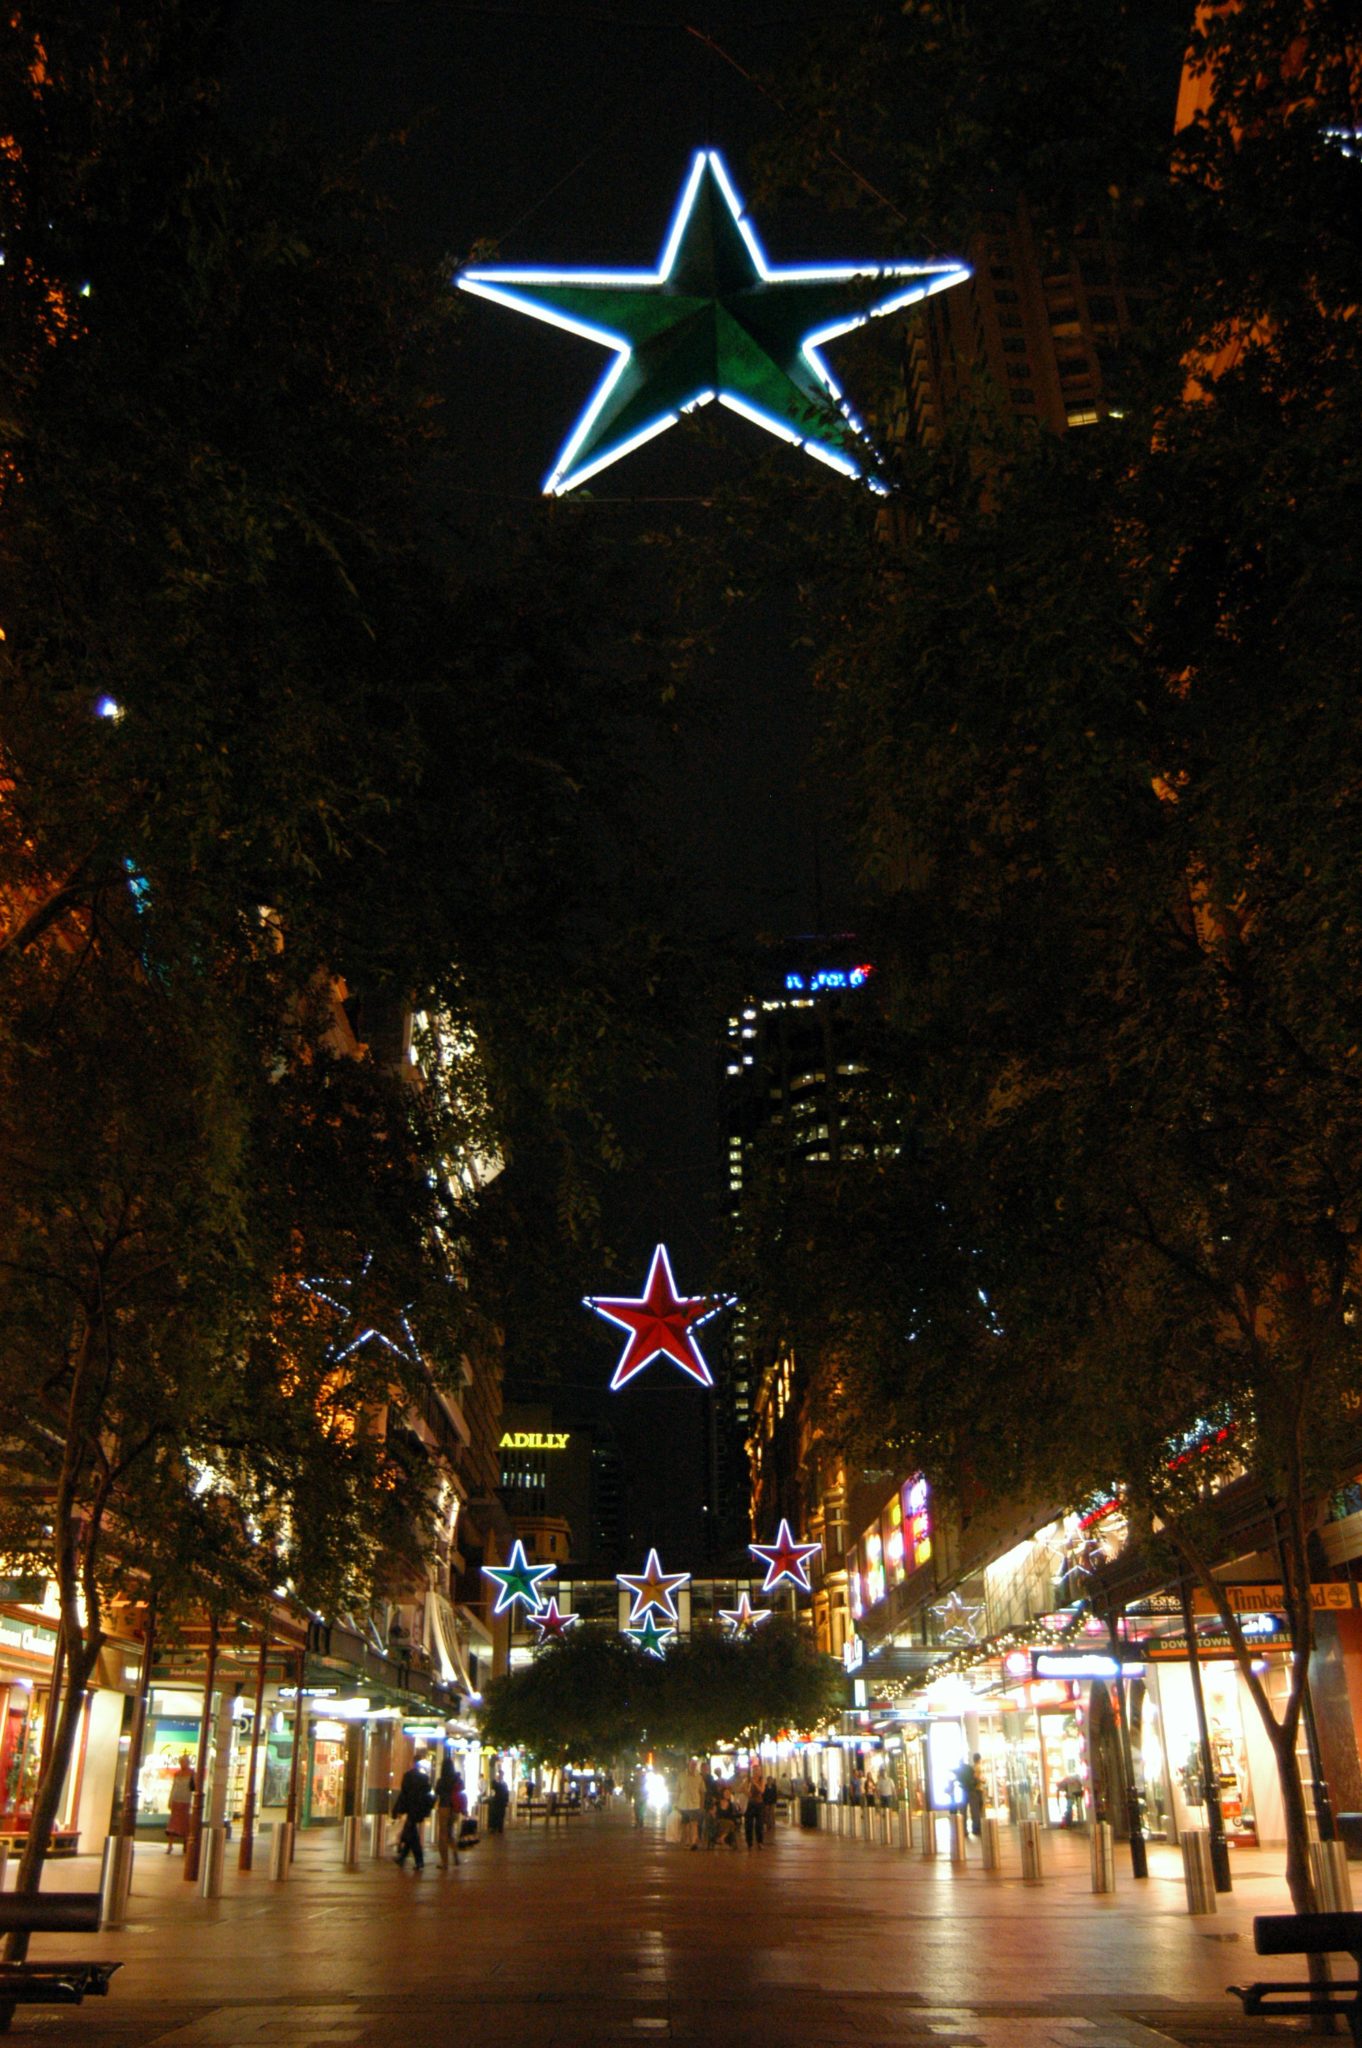 Christmas lighting at Pitt Street Mall Sydney